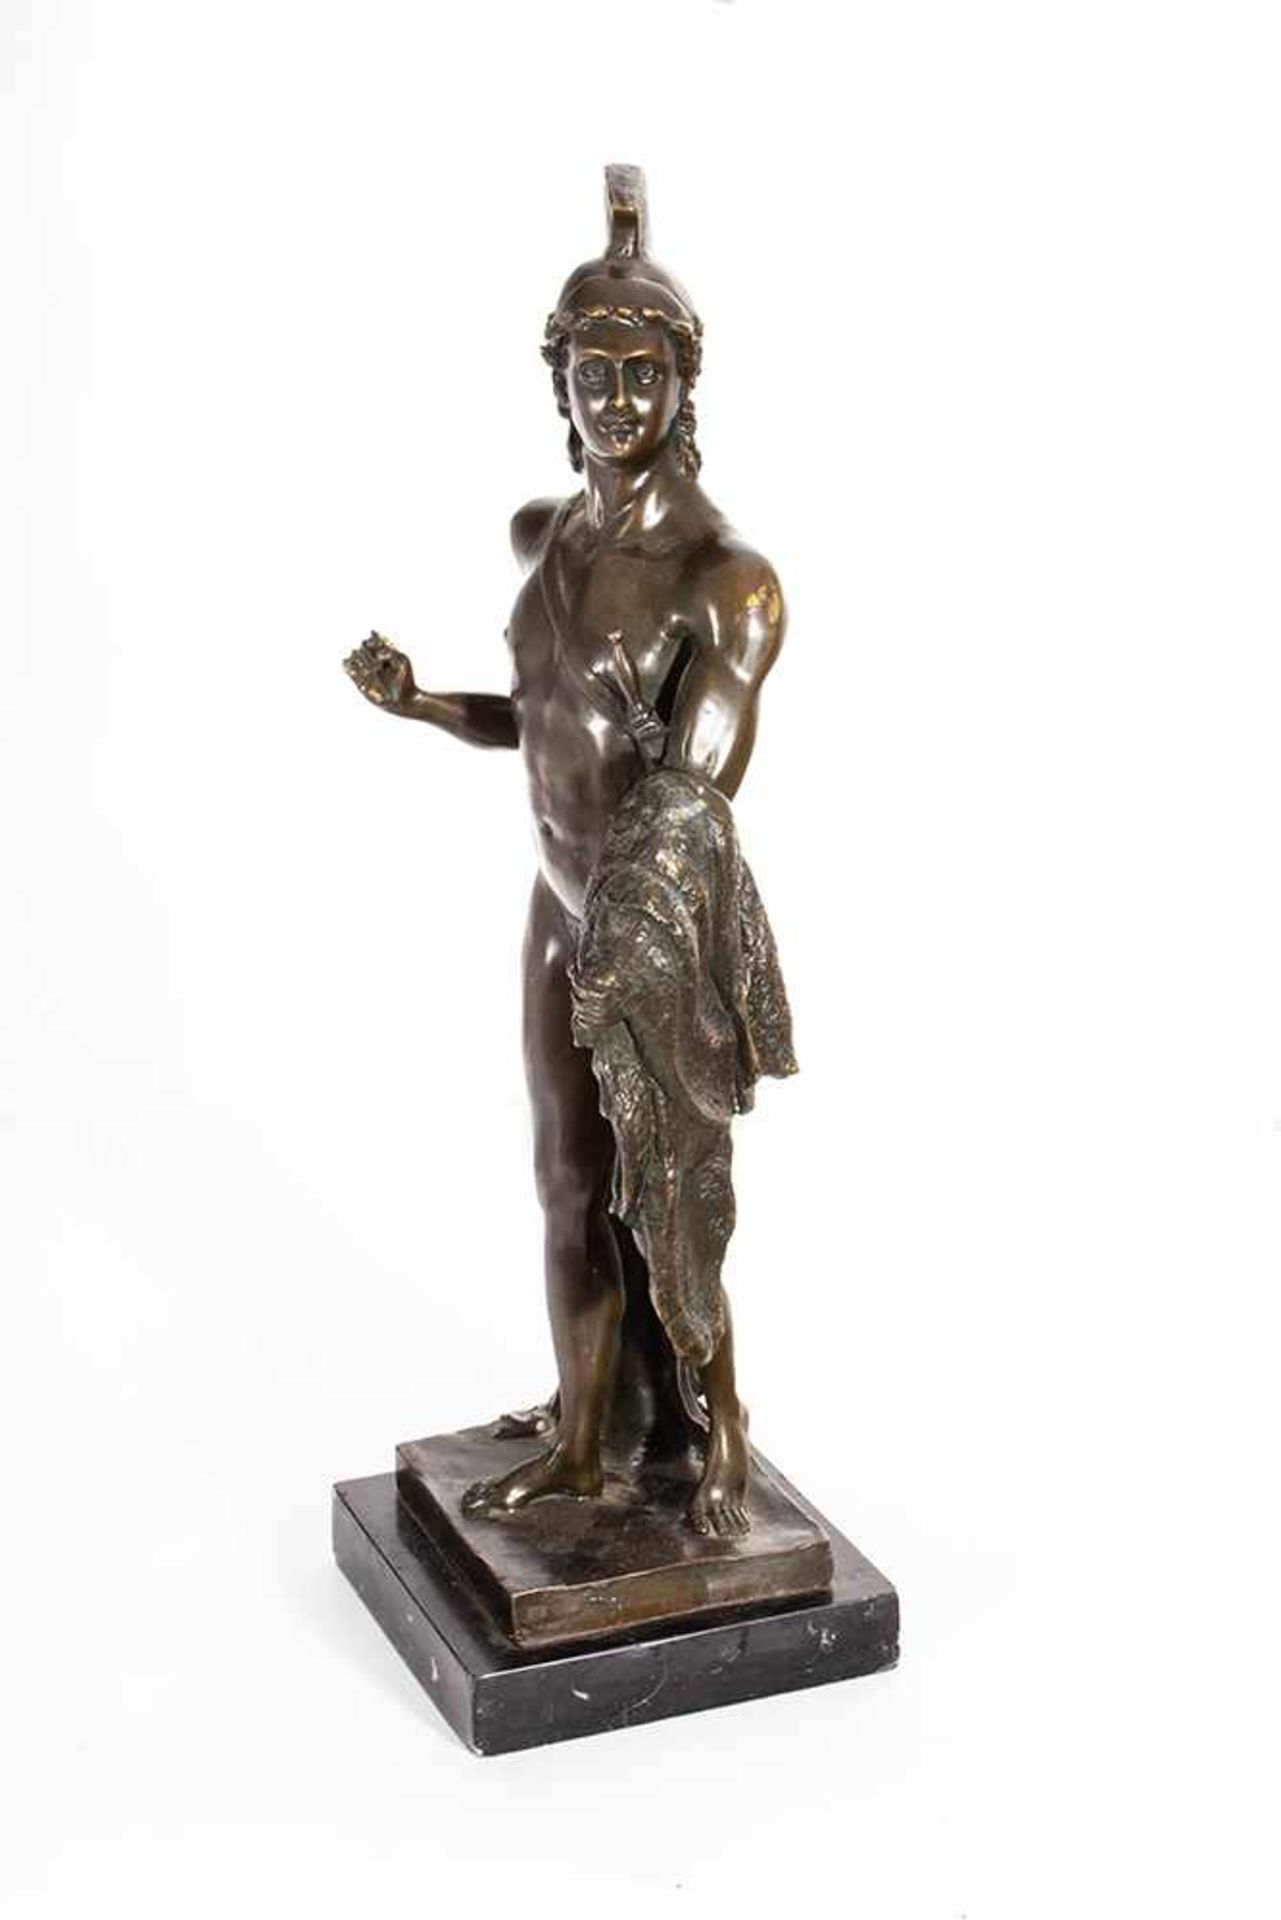 "Jasón con el vellocino de oro". Escultura en bronce sobre peana de mármol del siglo XX. "Jasón con